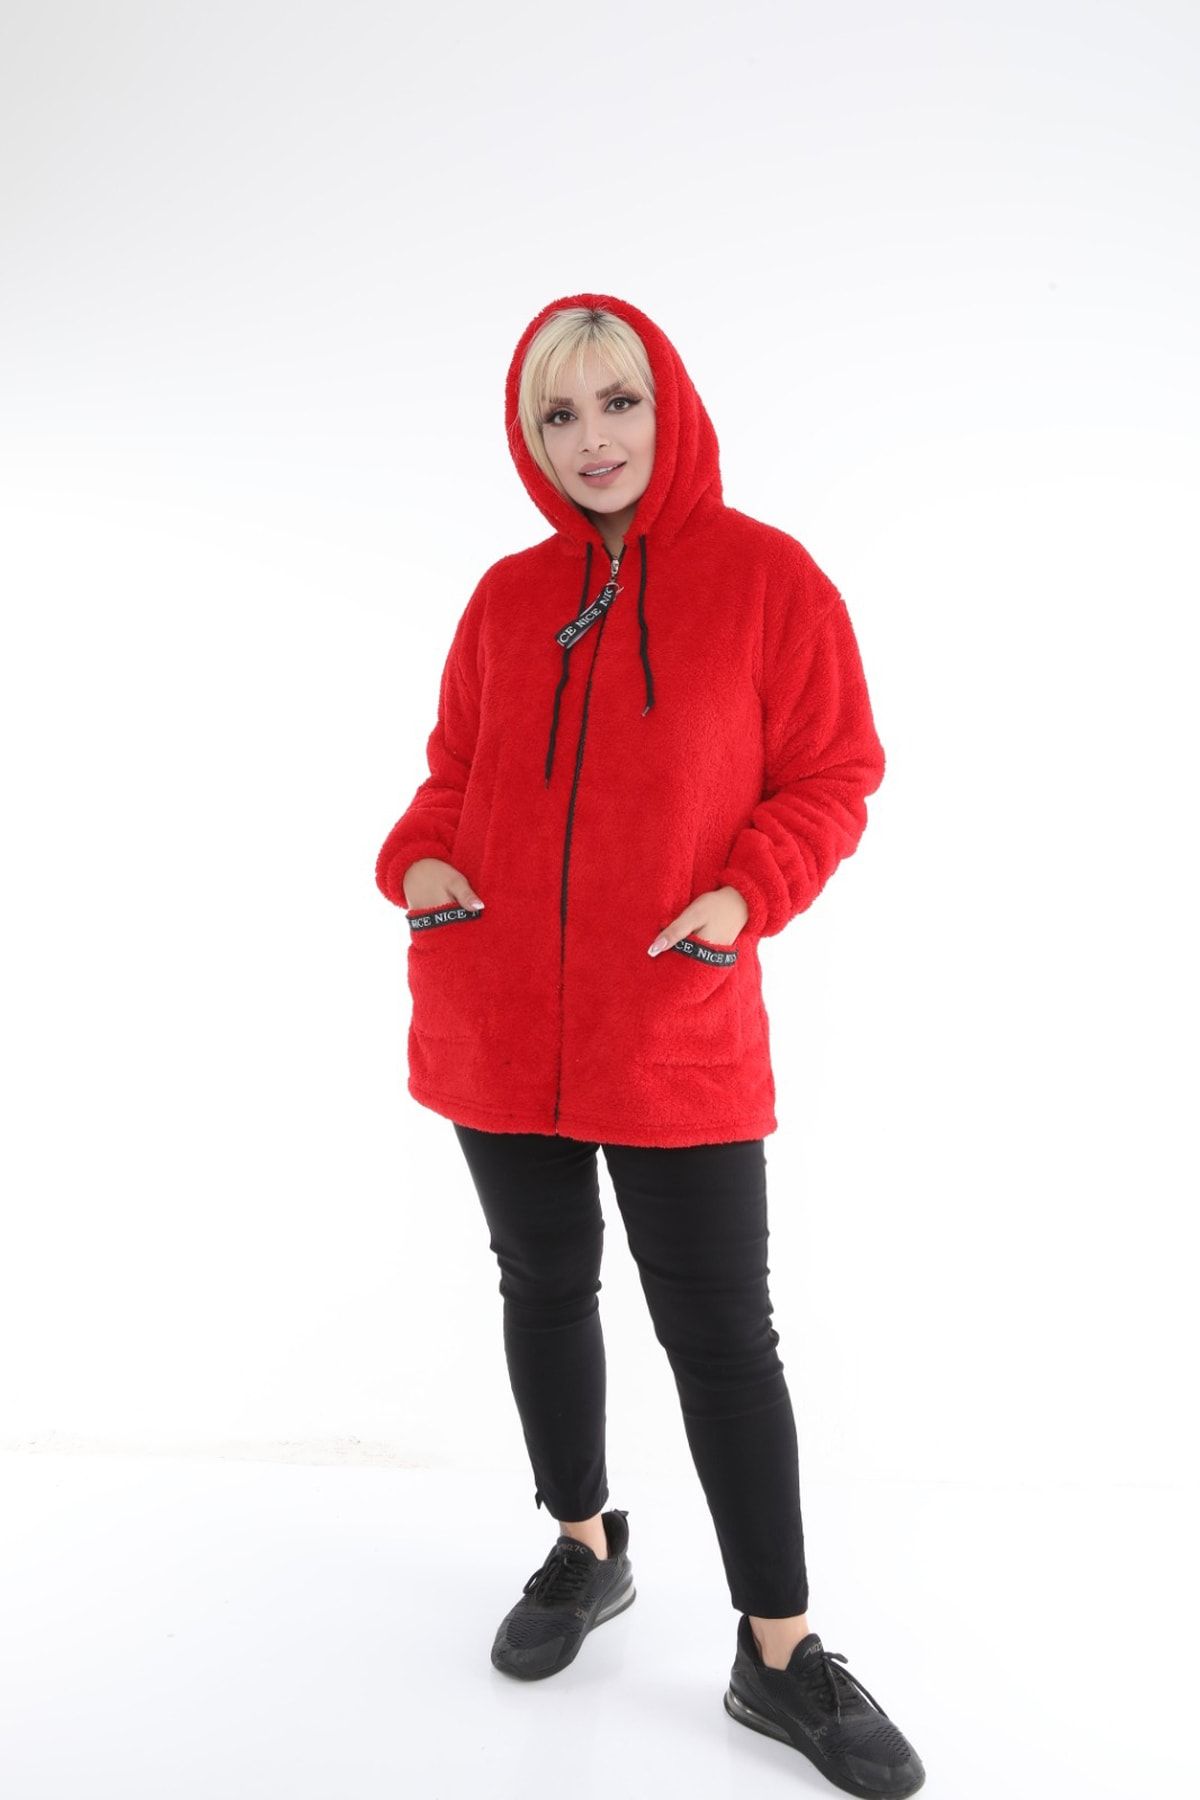 xlargebutik Büyük Beden Kadın Giyim Yeni Modell Full Esnek Kumaş Peluş Polar Kırmızı